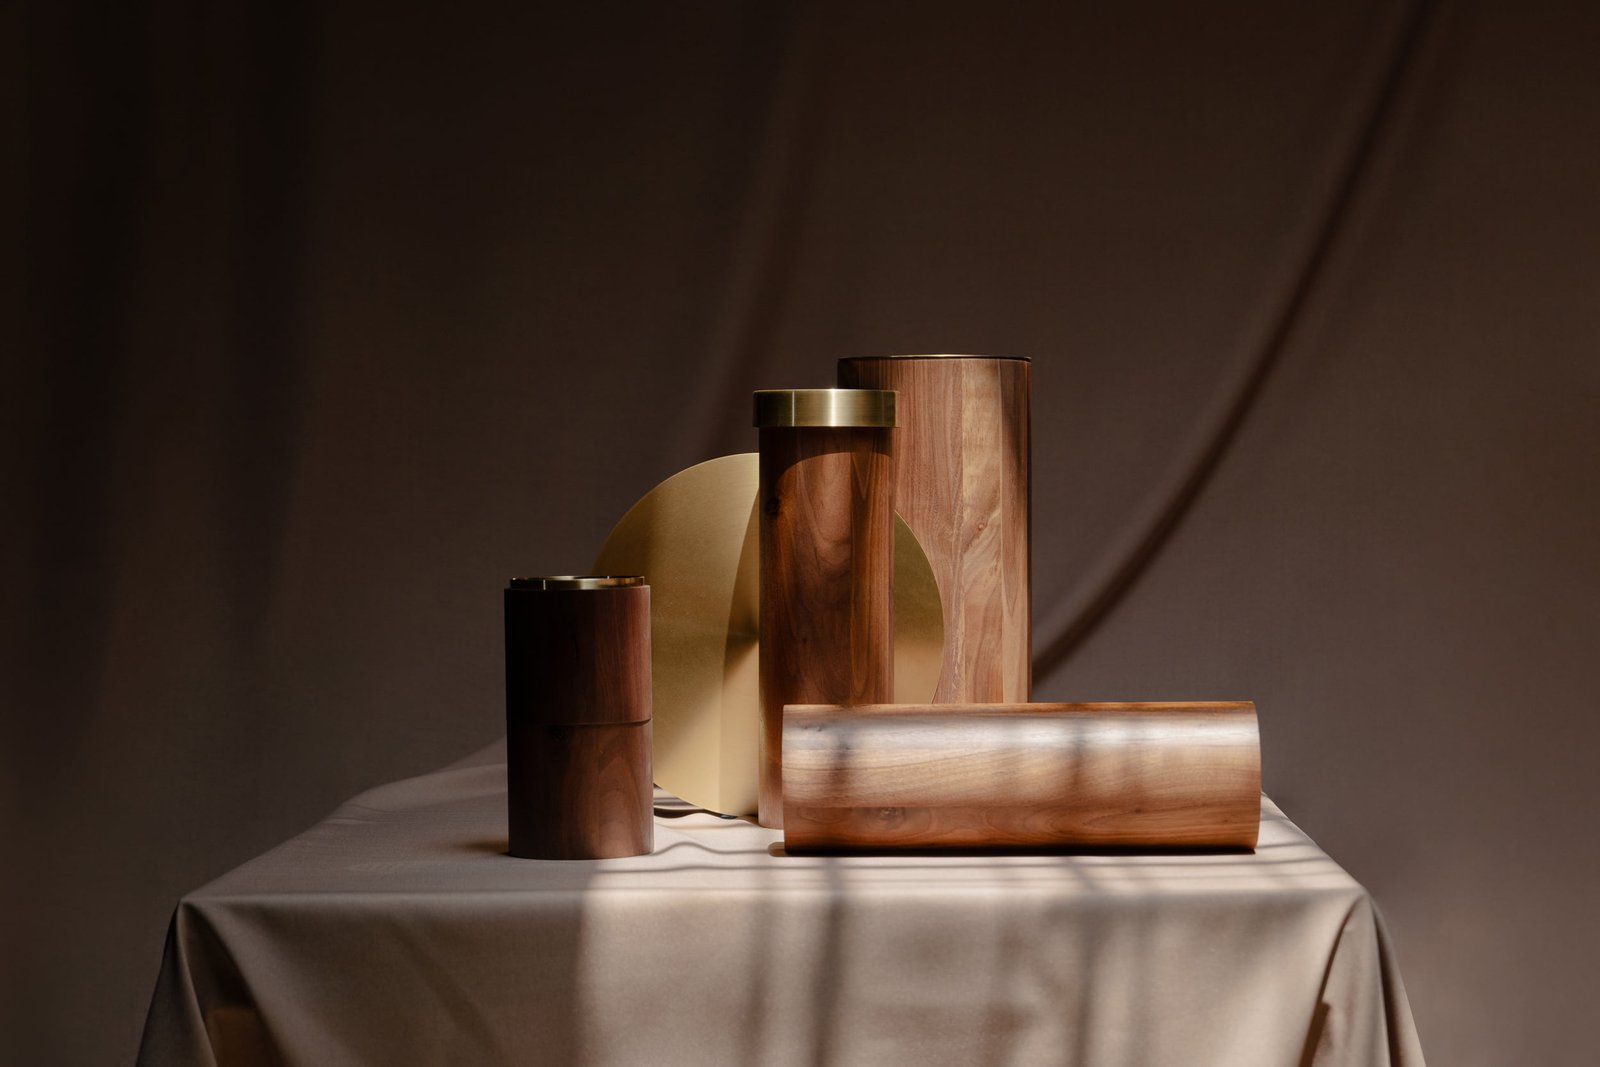 Piezas y materiales de madera y latón utilizados por Bandido Studio en la colección de lámparas TEMPLO.